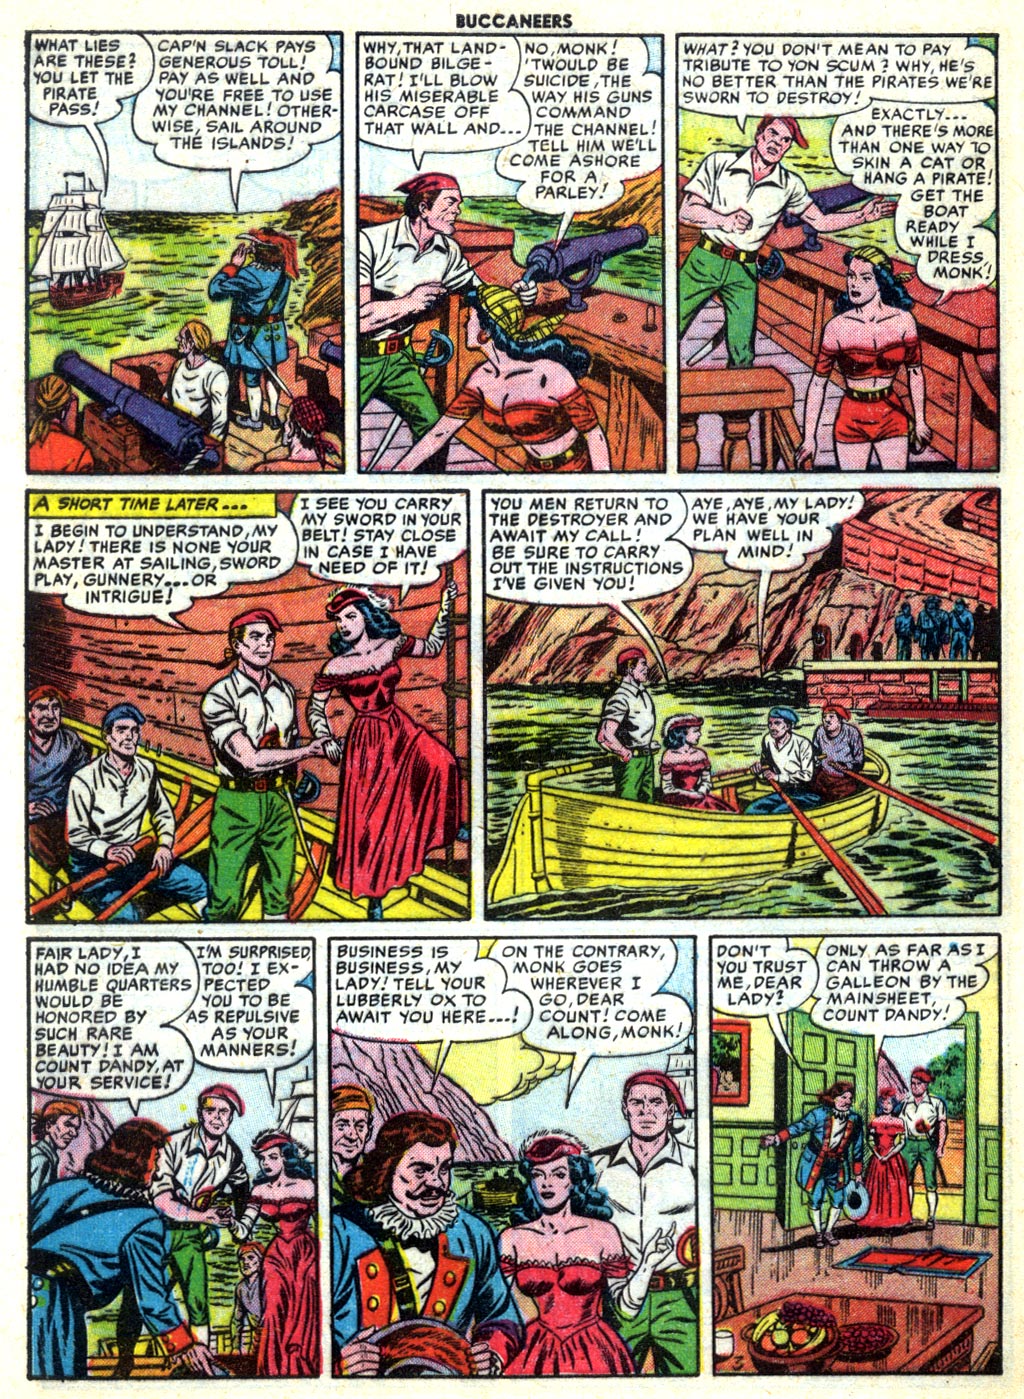 Read online Buccaneers comic -  Issue #27 - 44